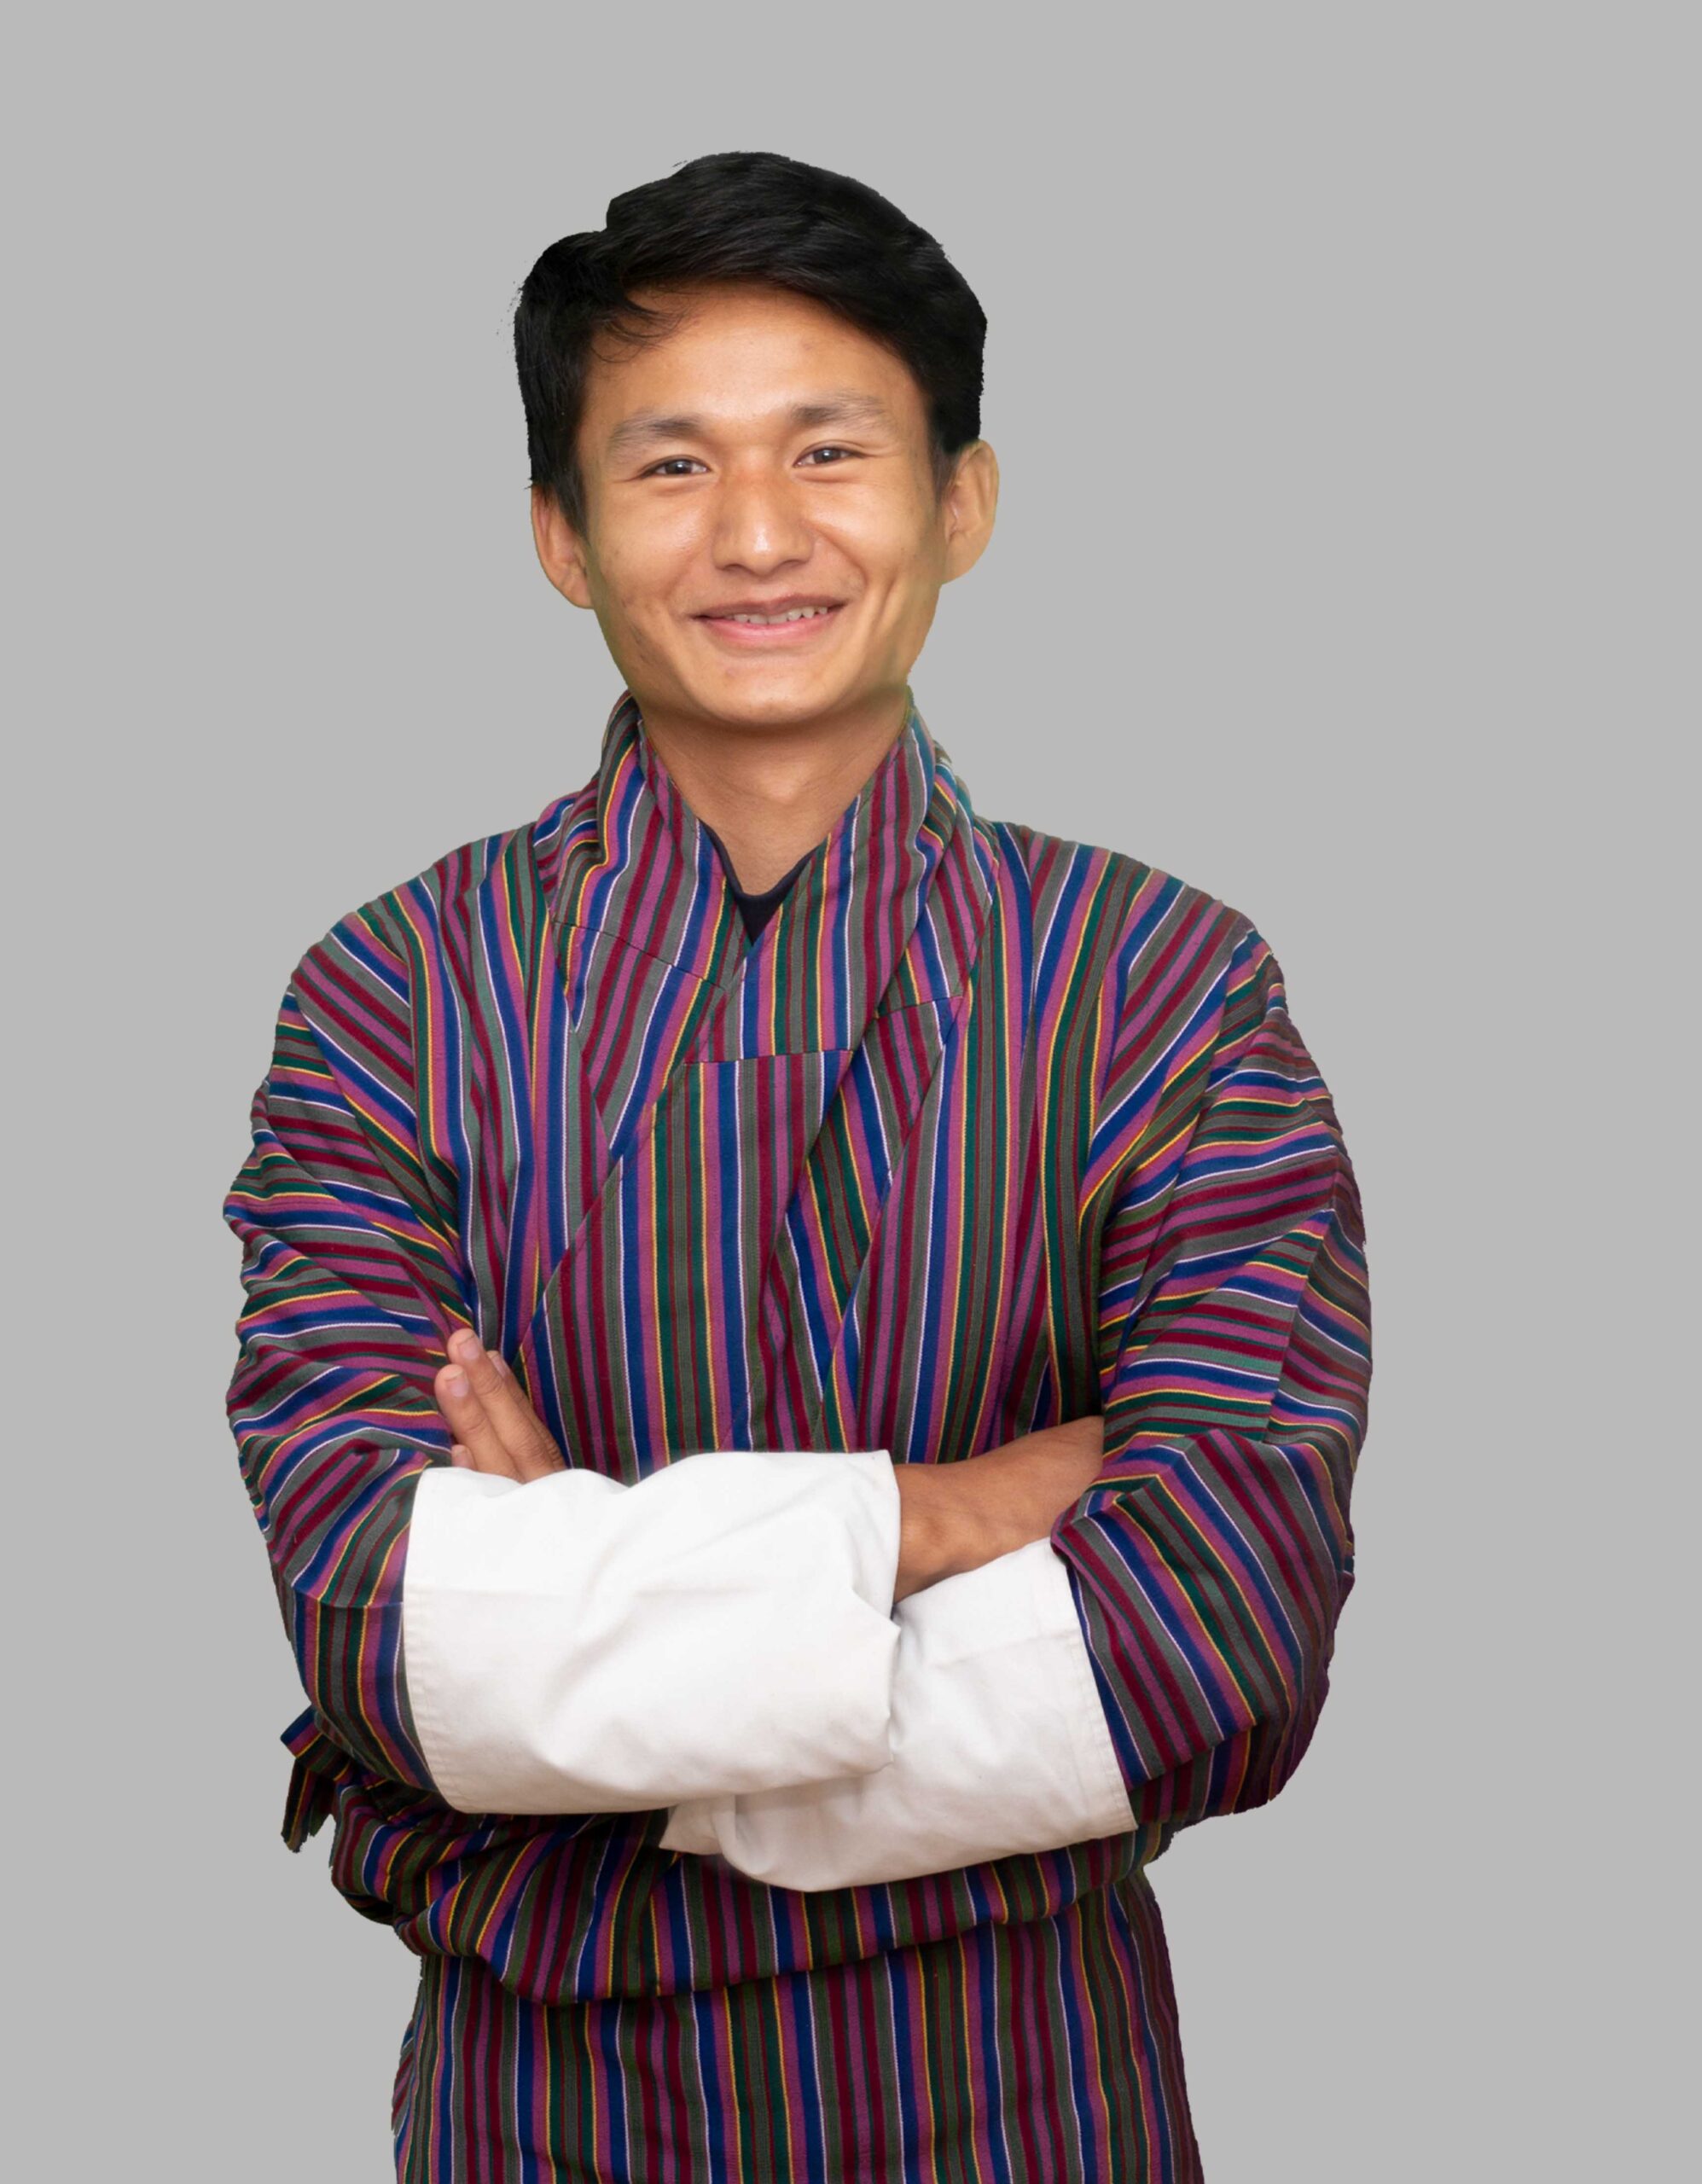 Dorji Rinchen